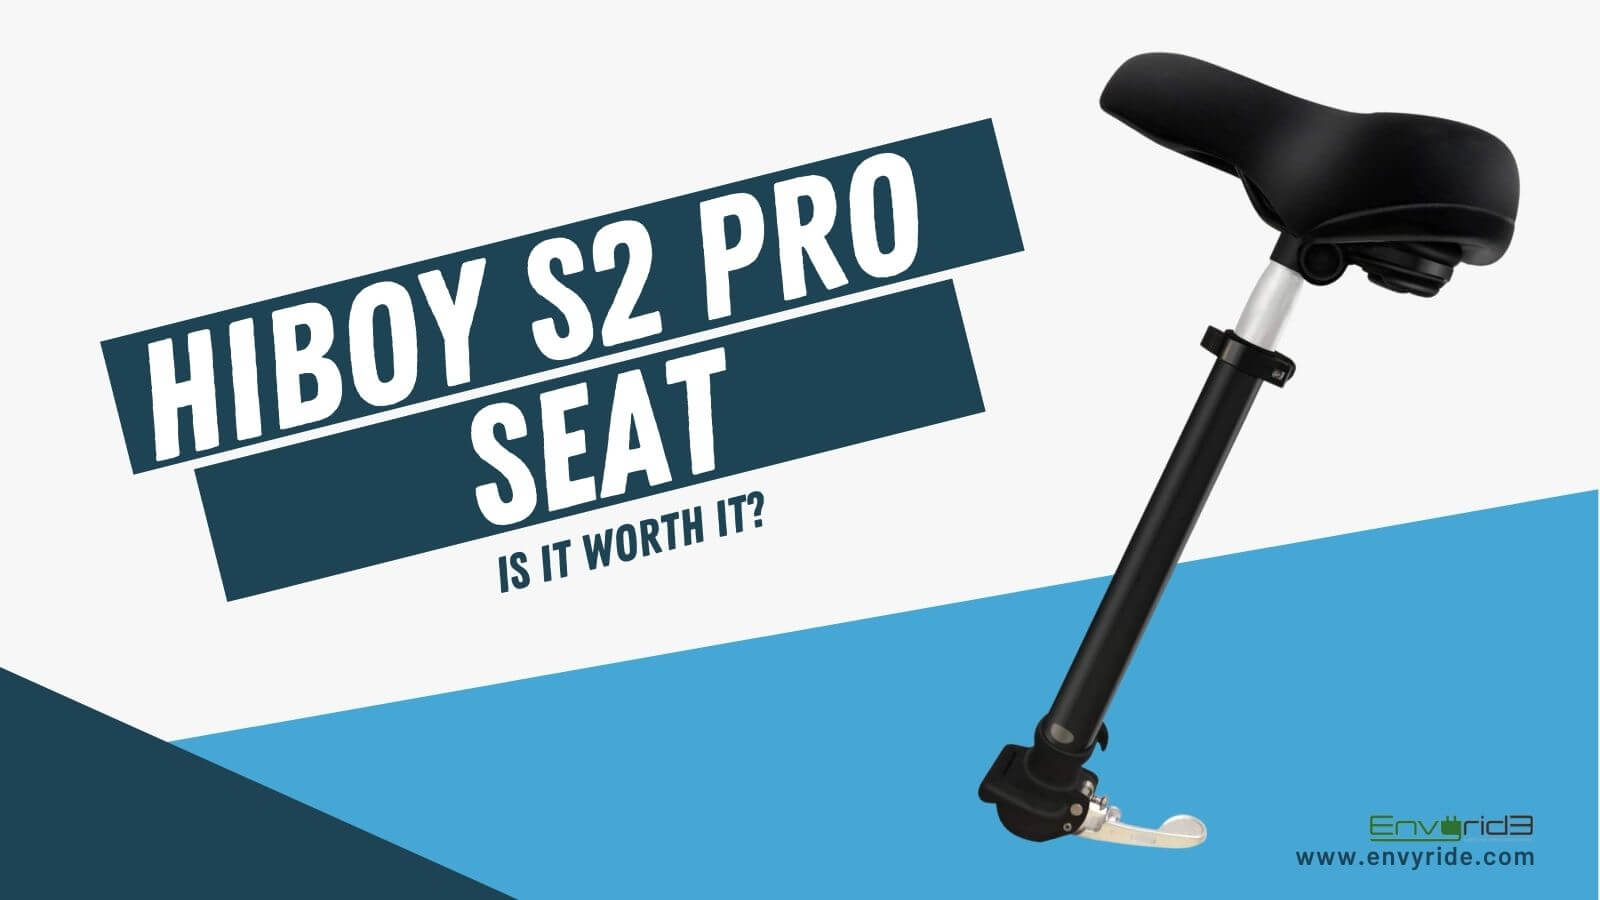 HiBoy S2 Pro Seat